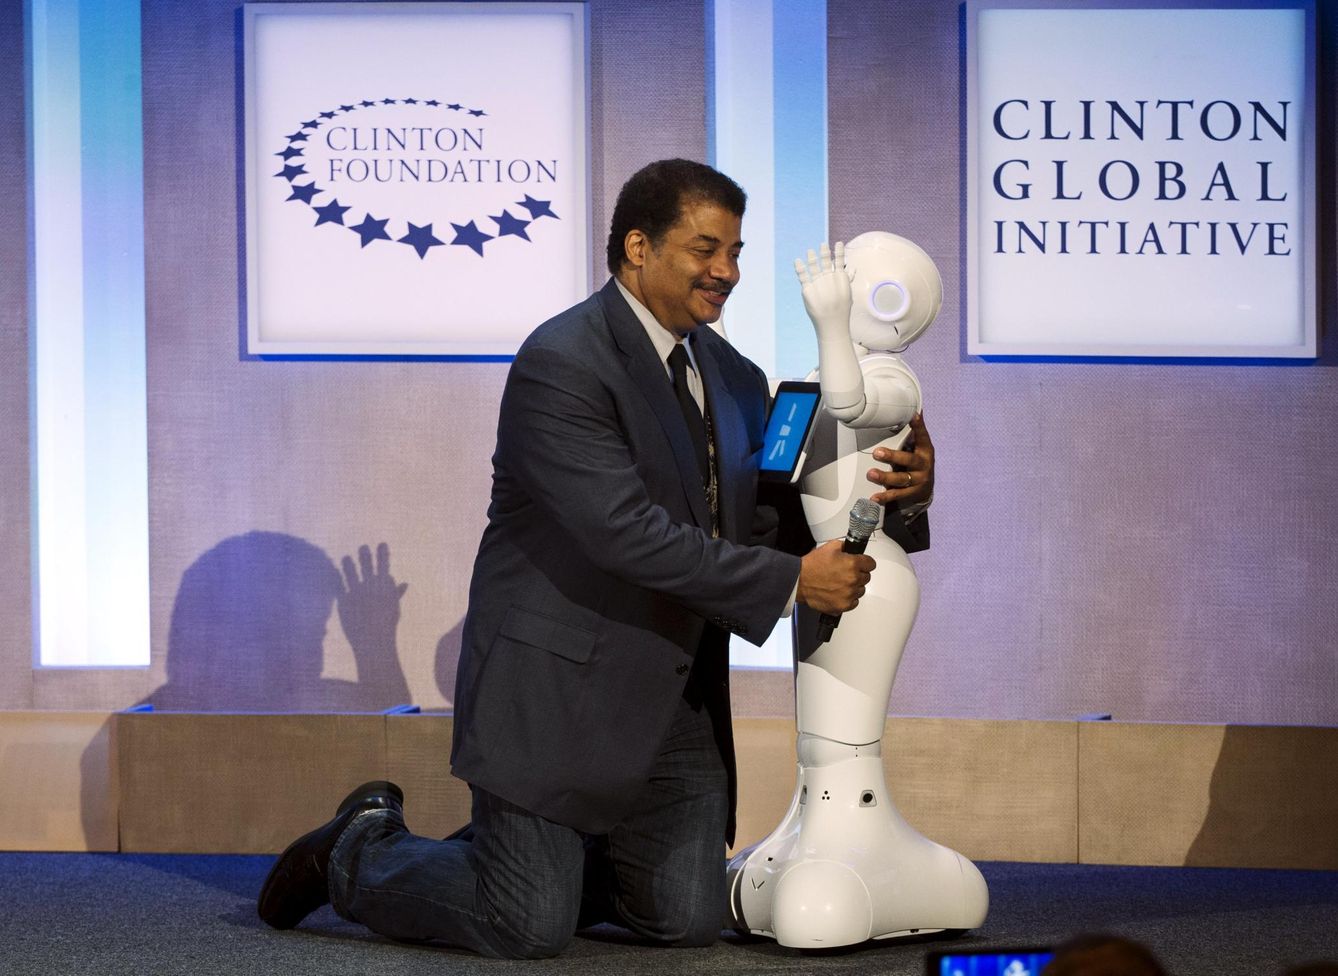 Neil deGrasse Tyson, uno de los divulgadores científicos más famoso, interactúa con un robot. (Reuters)